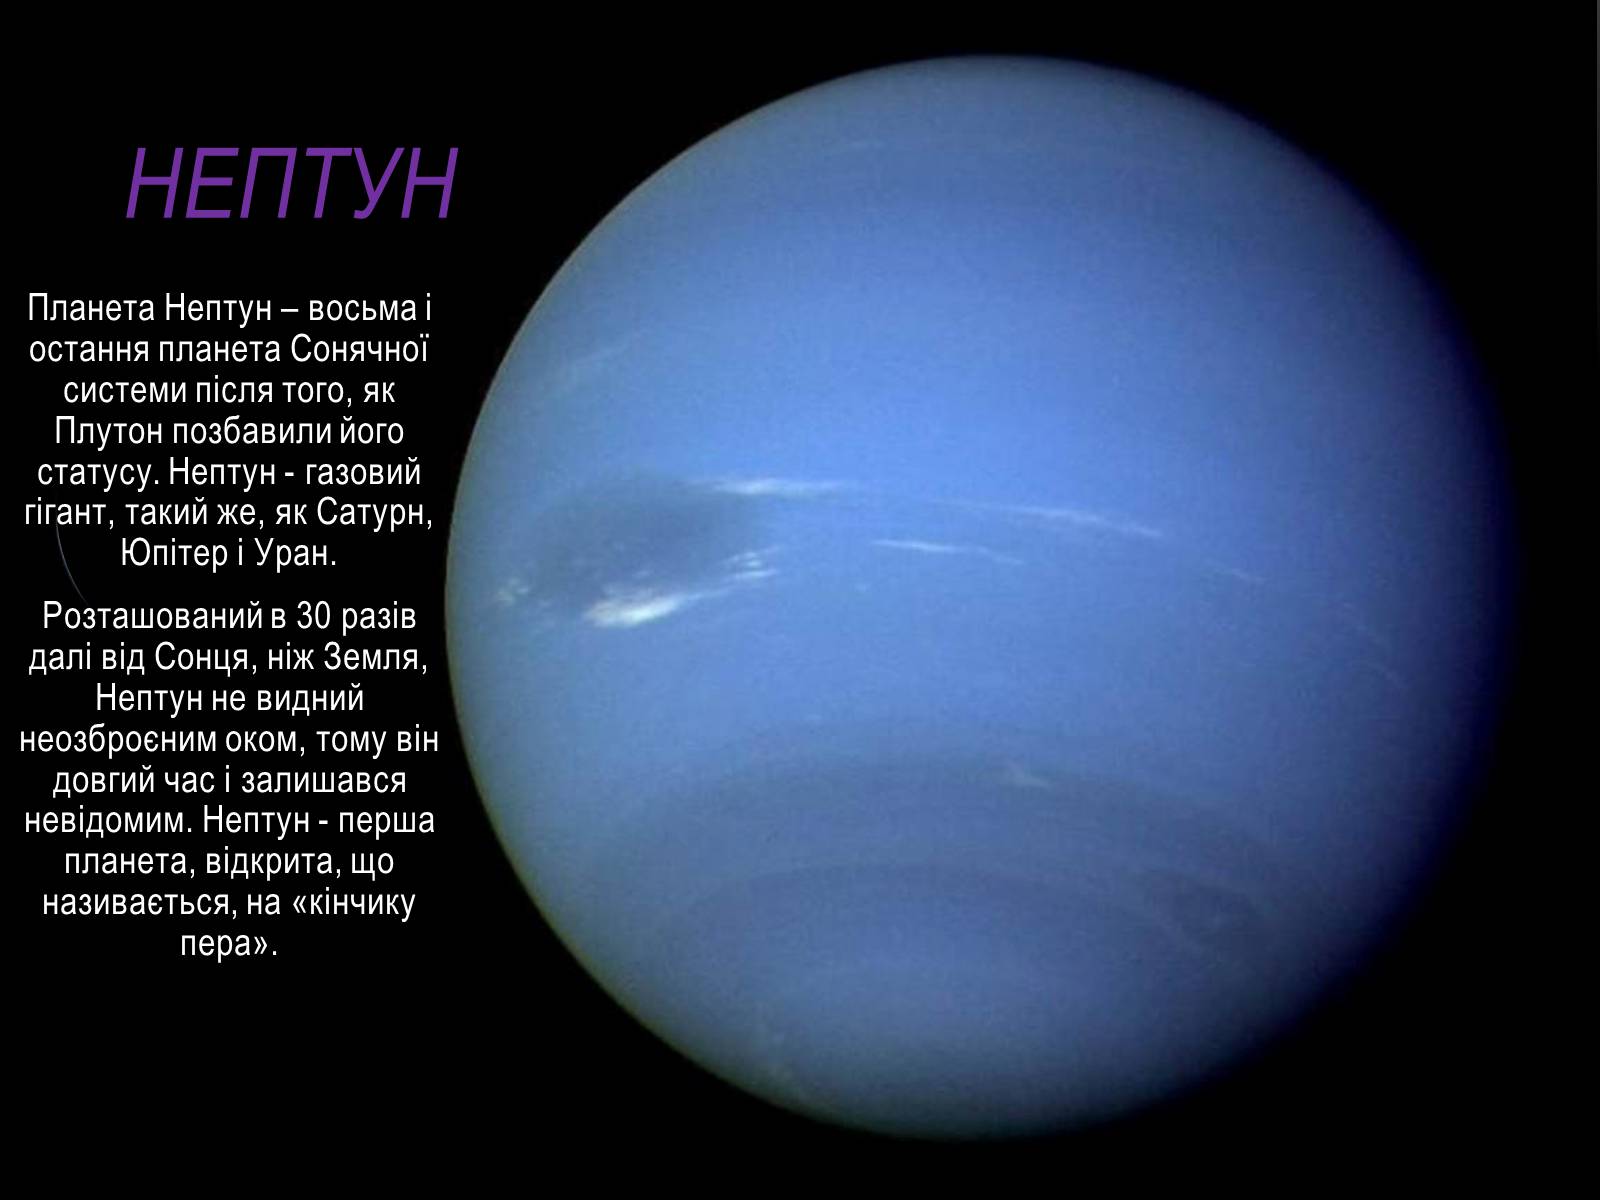 Нептун свет. Нептун Планета описание для детей. Нептун Планета солнечной системы строение. Проект про планету Нептун. Нептун описание для детей.